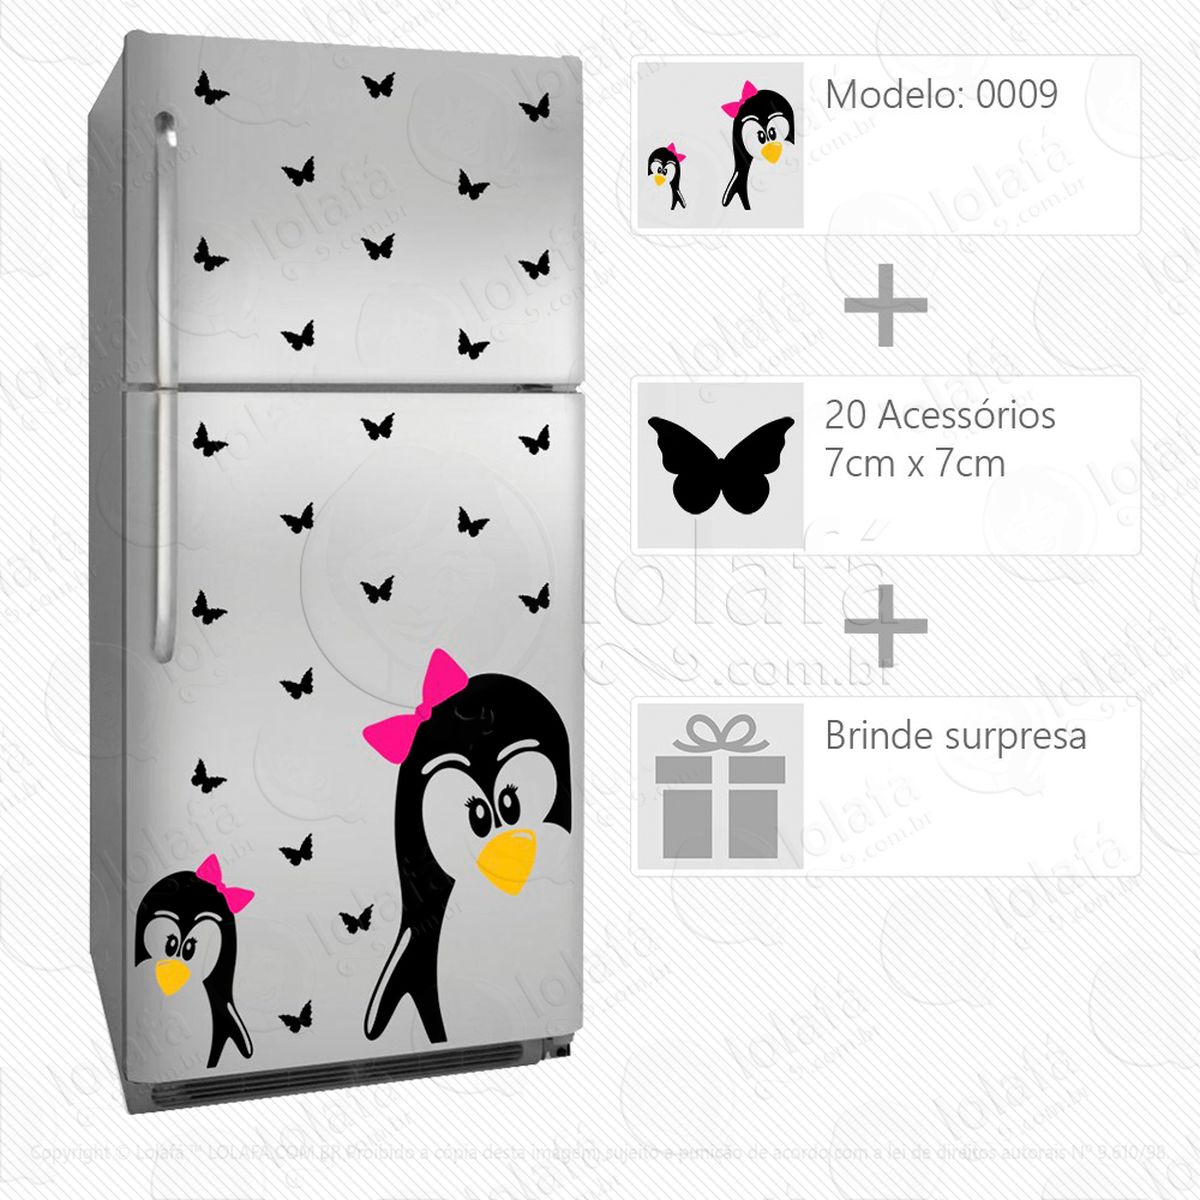 pinguins adesivo para geladeira e frigobar - mod:9